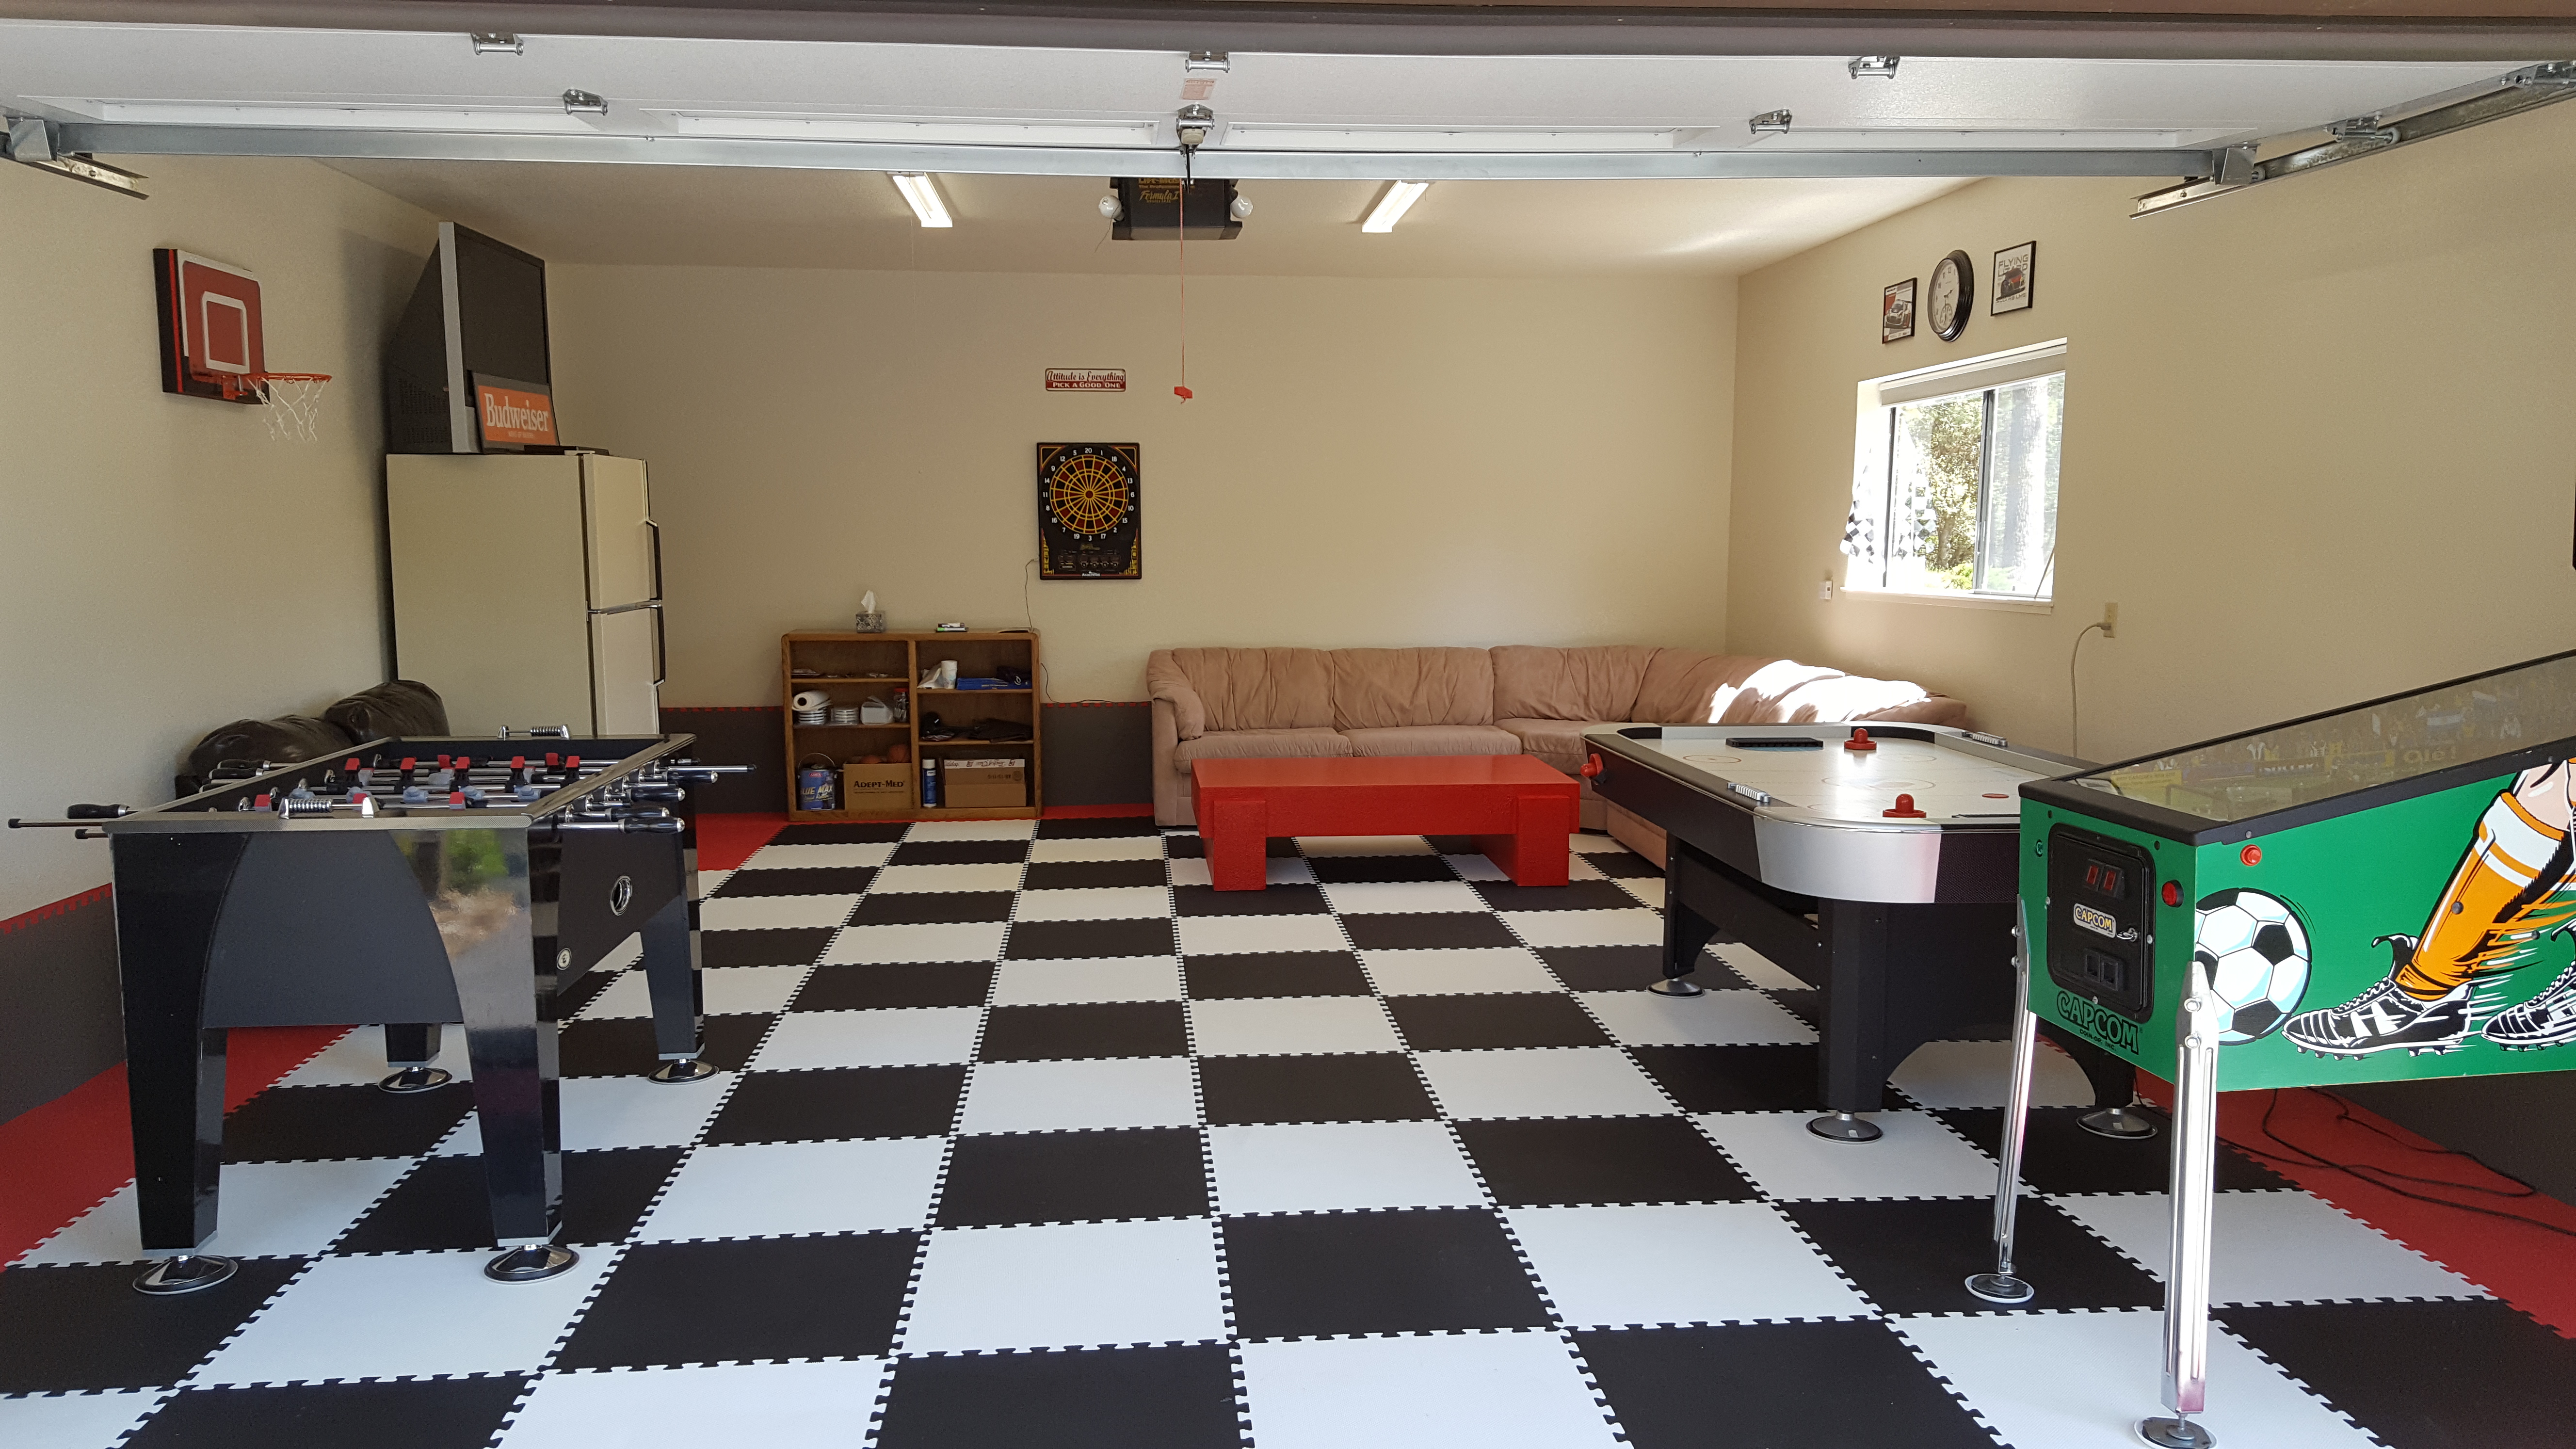 Greatmats Top 3 Basement Game Room Floor Tiles